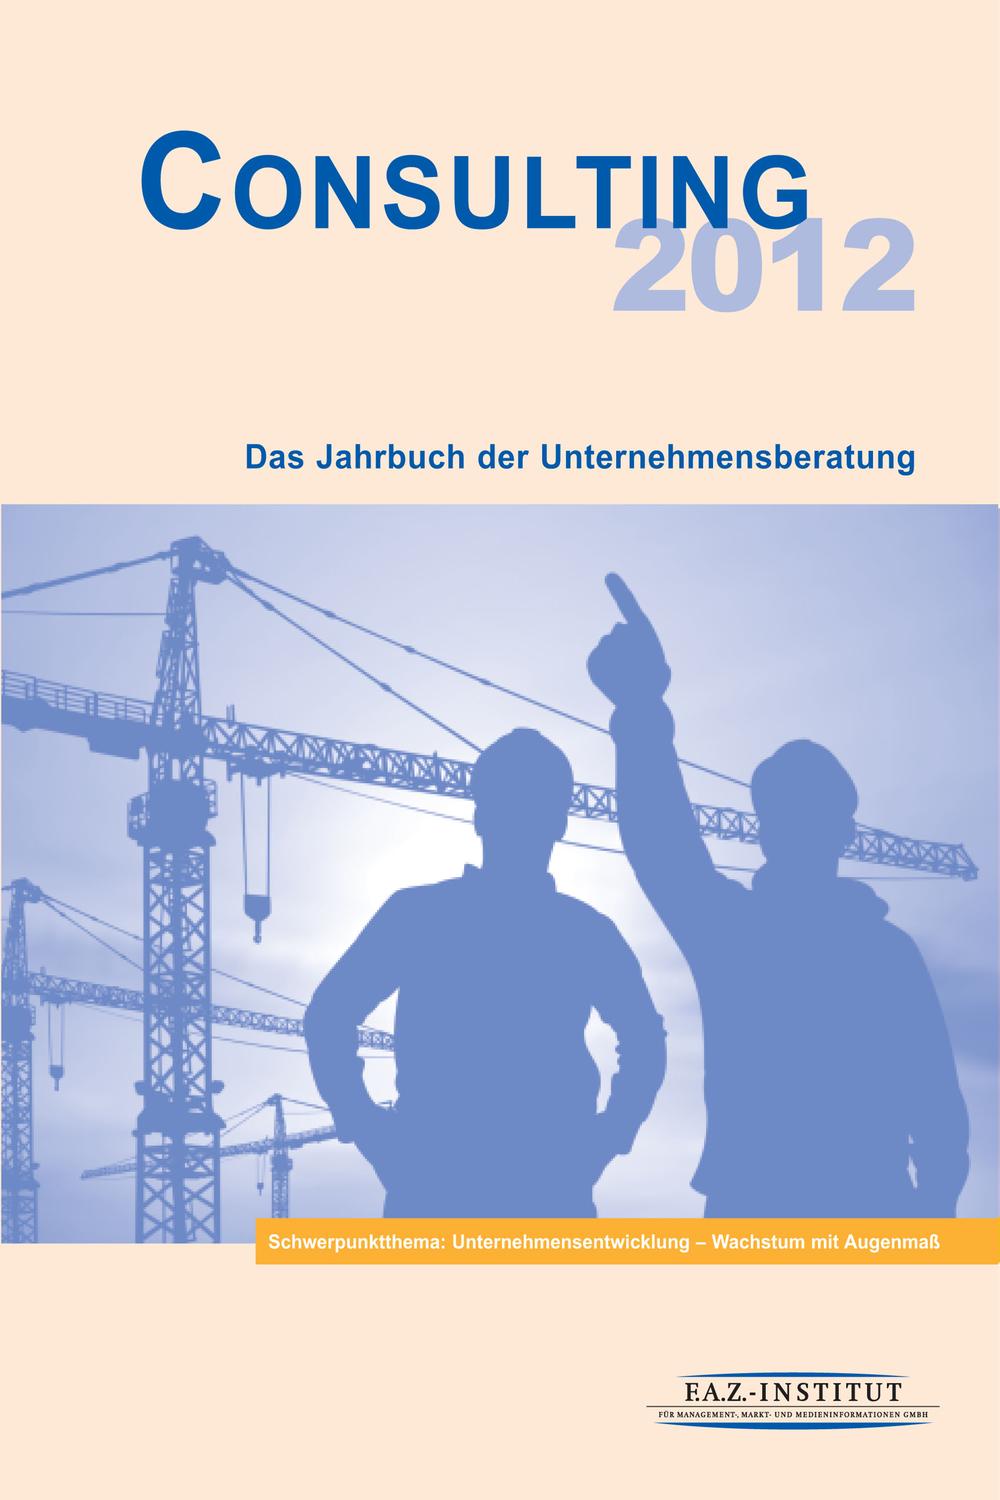 Consulting 2012 - Markt- und Medieninformationen F.A.Z.-Institut für Management-, Markt- und Medieninformationen